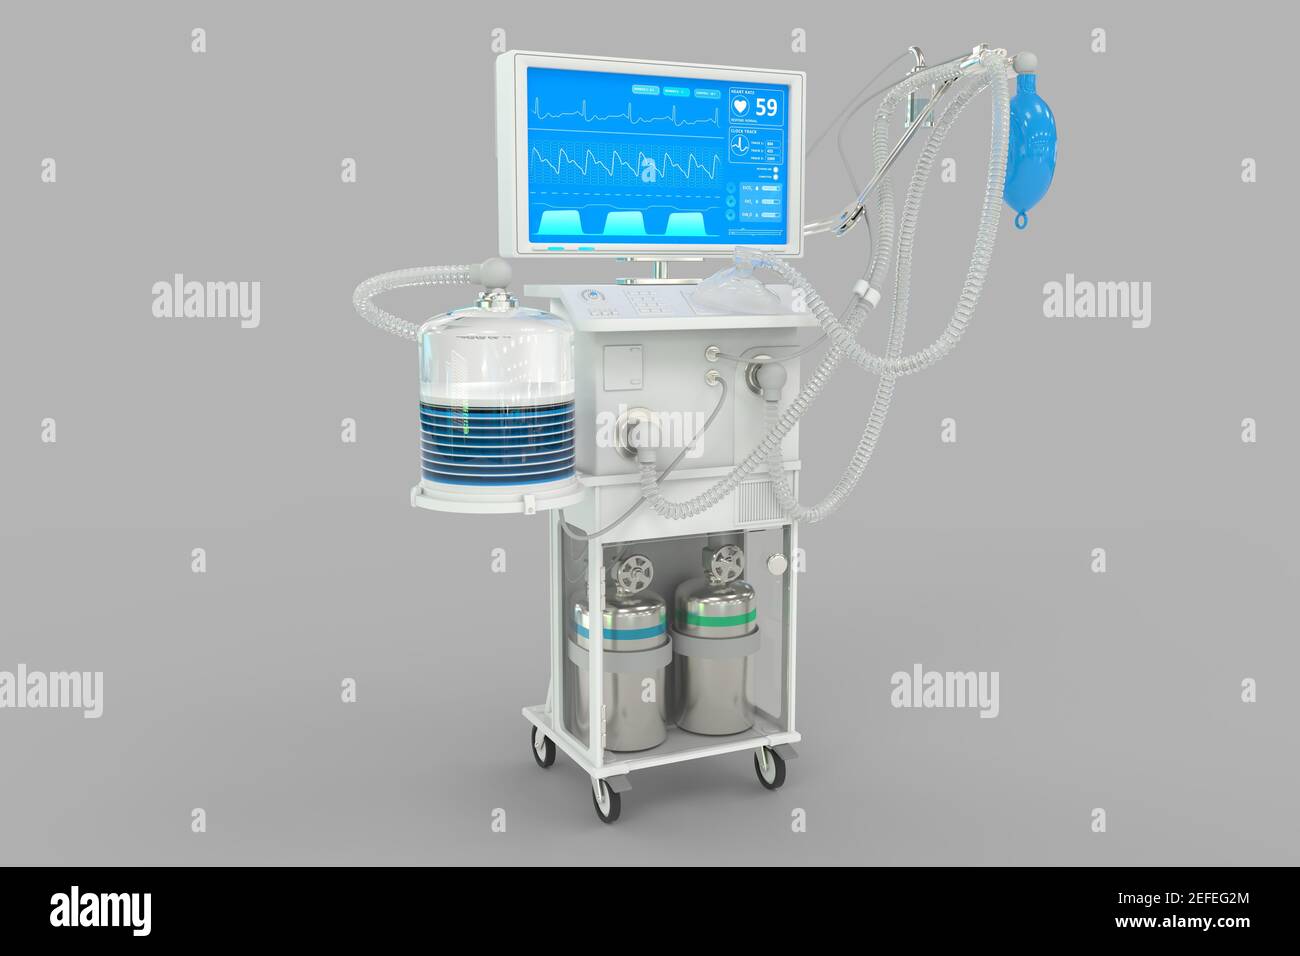 Medical 3D Illustration, ICU künstlicher Lungenventilator mit fiktiver Konstruktion isoliert auf grauem Hintergrund - Heal 2019-ncov Konzept Stockfoto